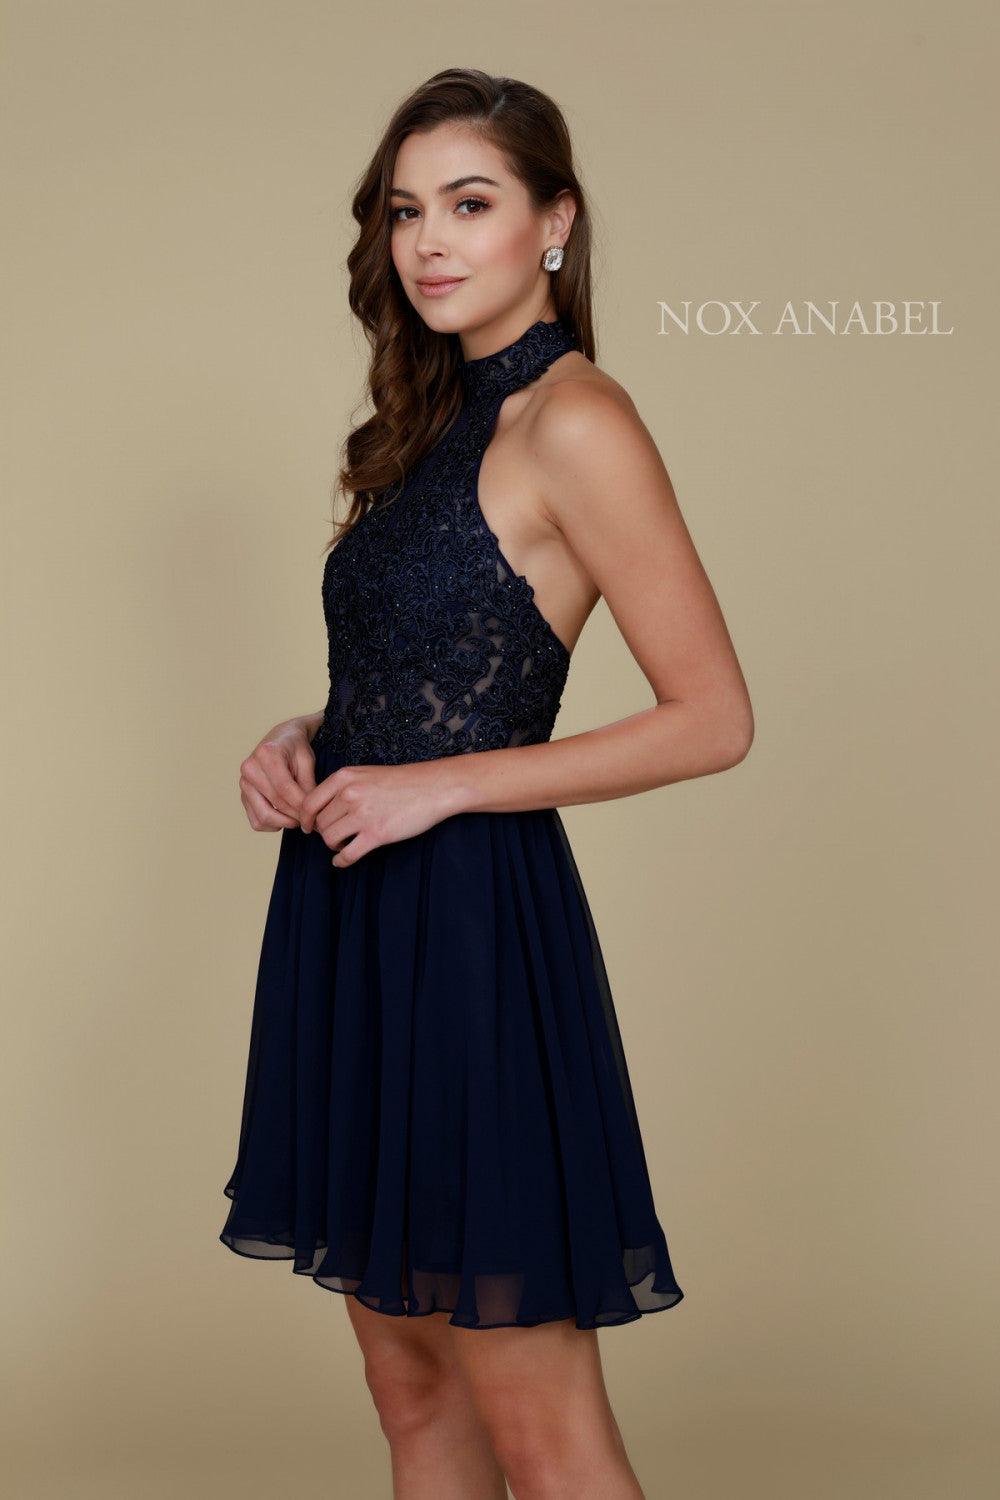 Short Halter Neck Formal Prom Cocktail Dress - The Dress Outlet Nox Anabel